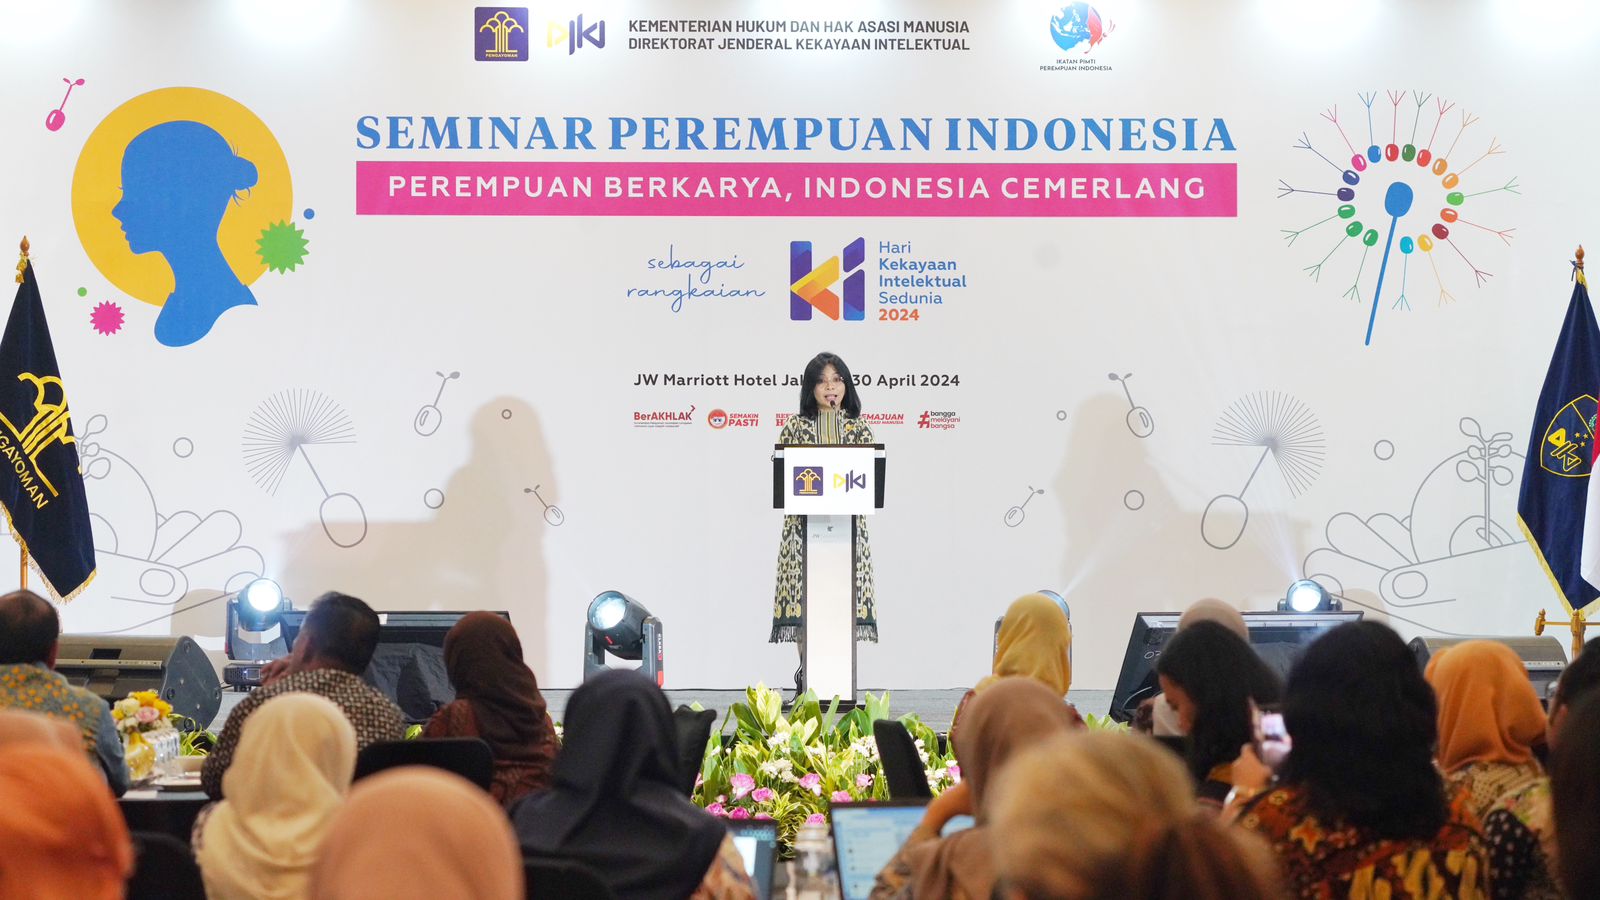 DJKI Ingatkan Pentingnya Peran Perempuan Dalam Sistem KI di Indonesia Melalui Seminar Perempuan Indonesia